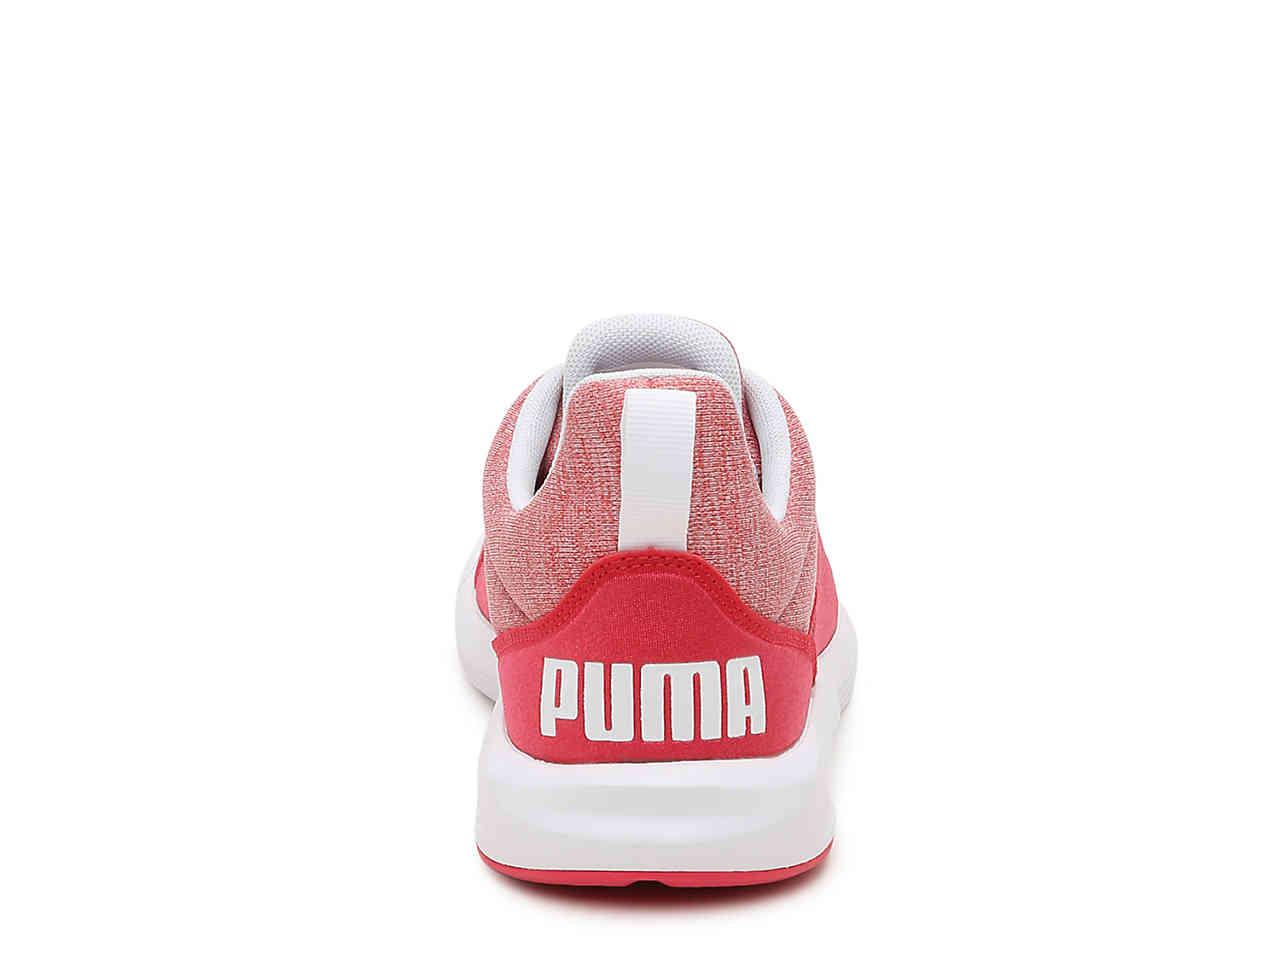 puma prodigy training shoes